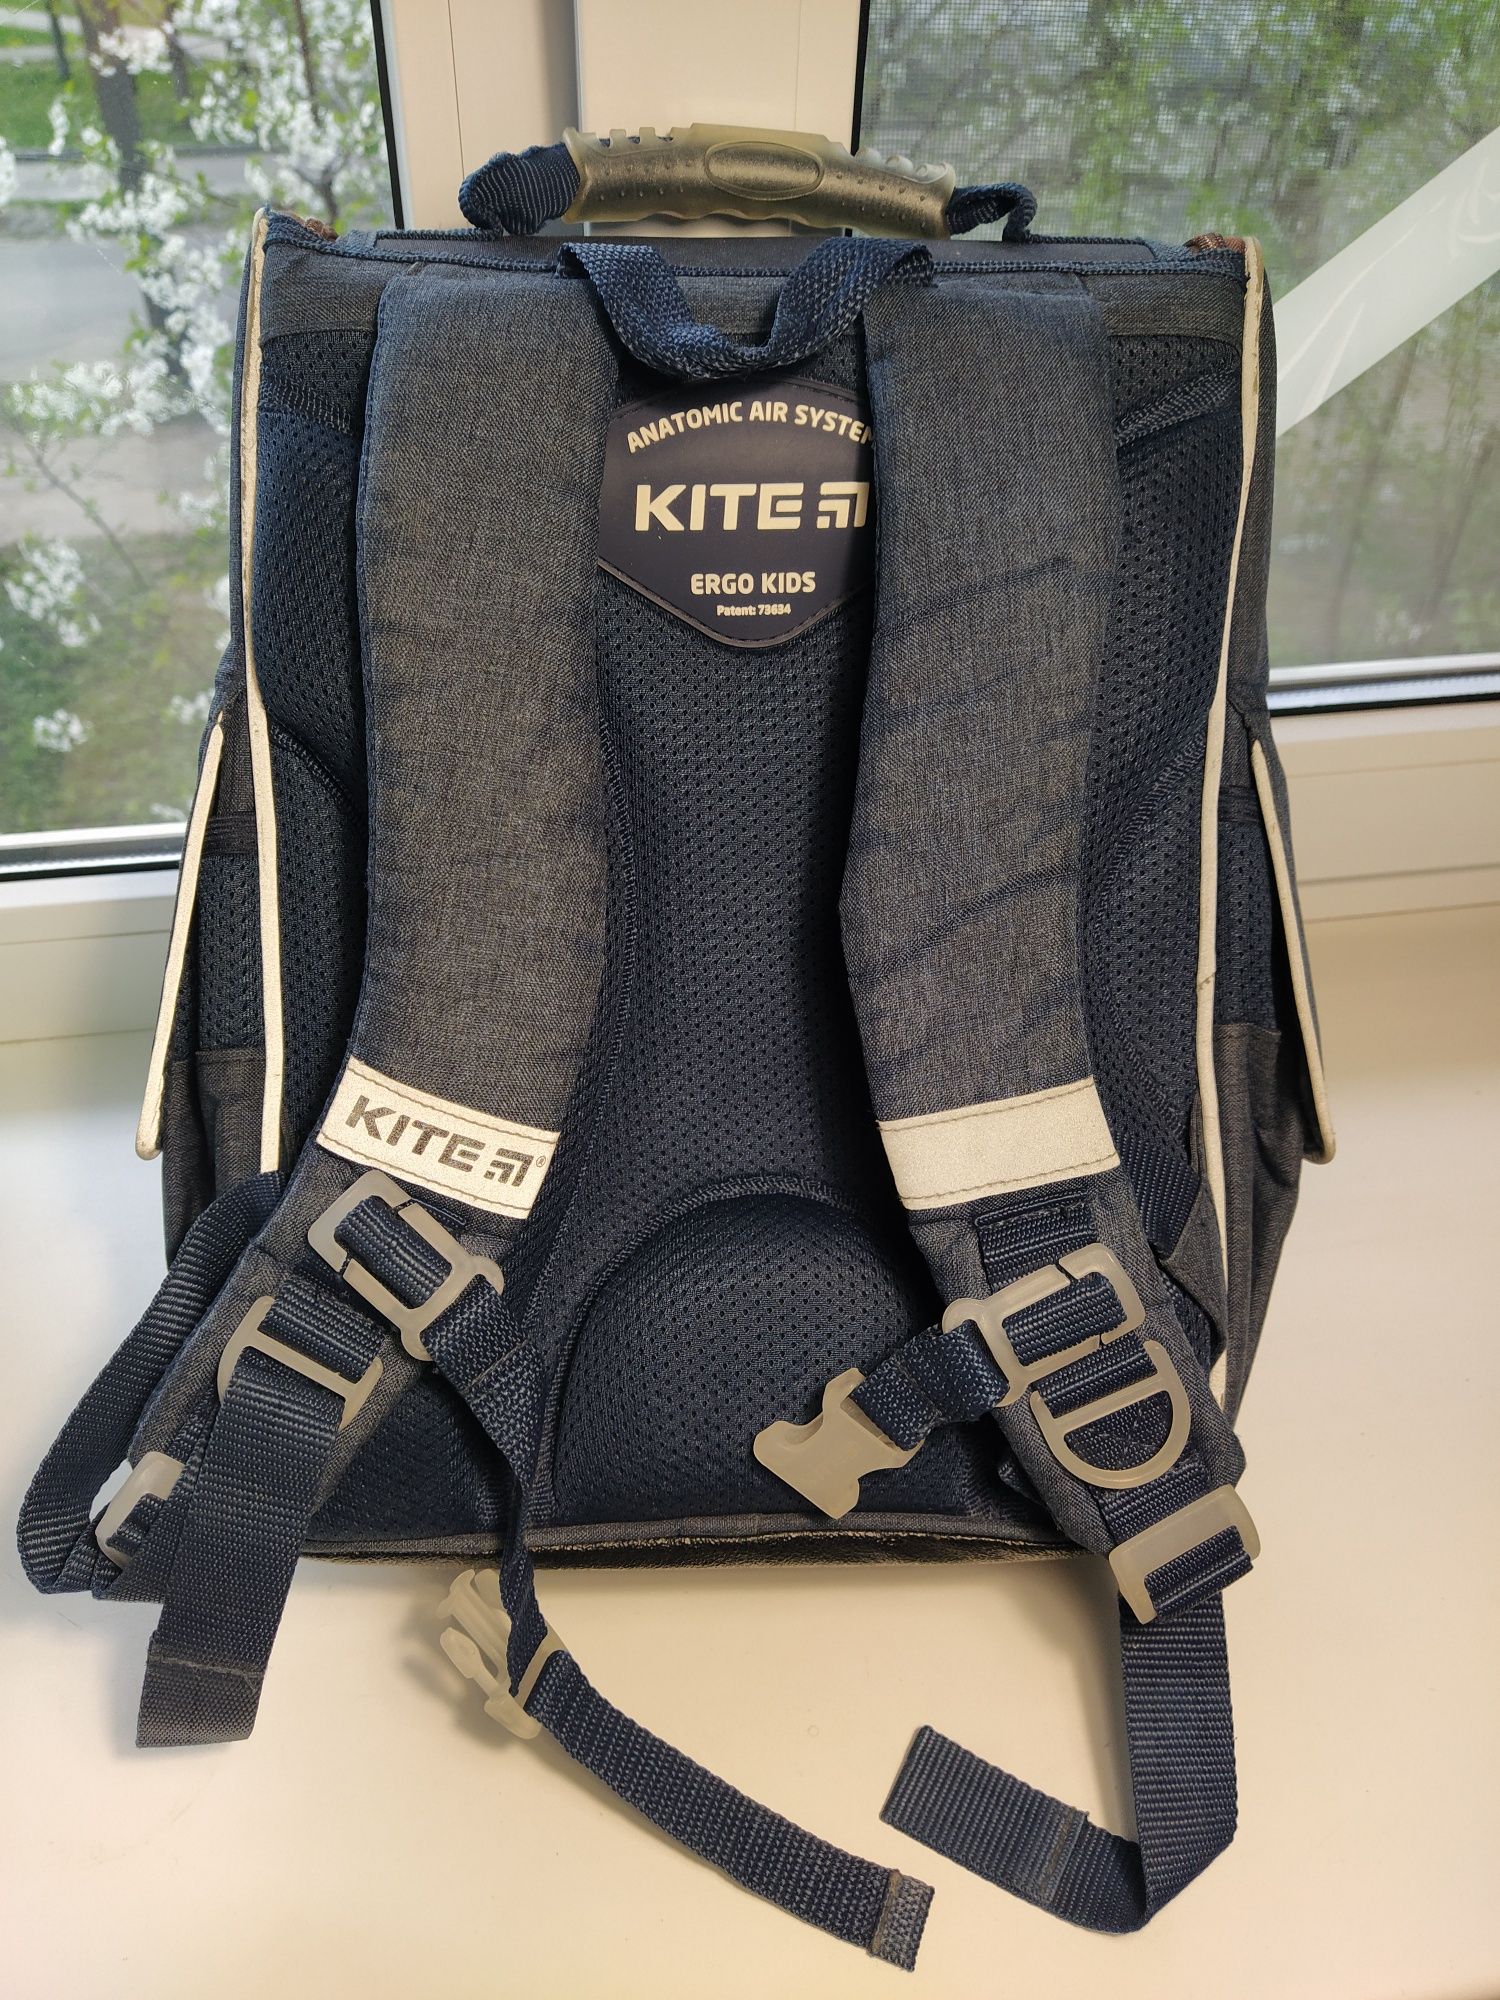 Рюкзак Kite для першокласника об'єм 10л, каркасний